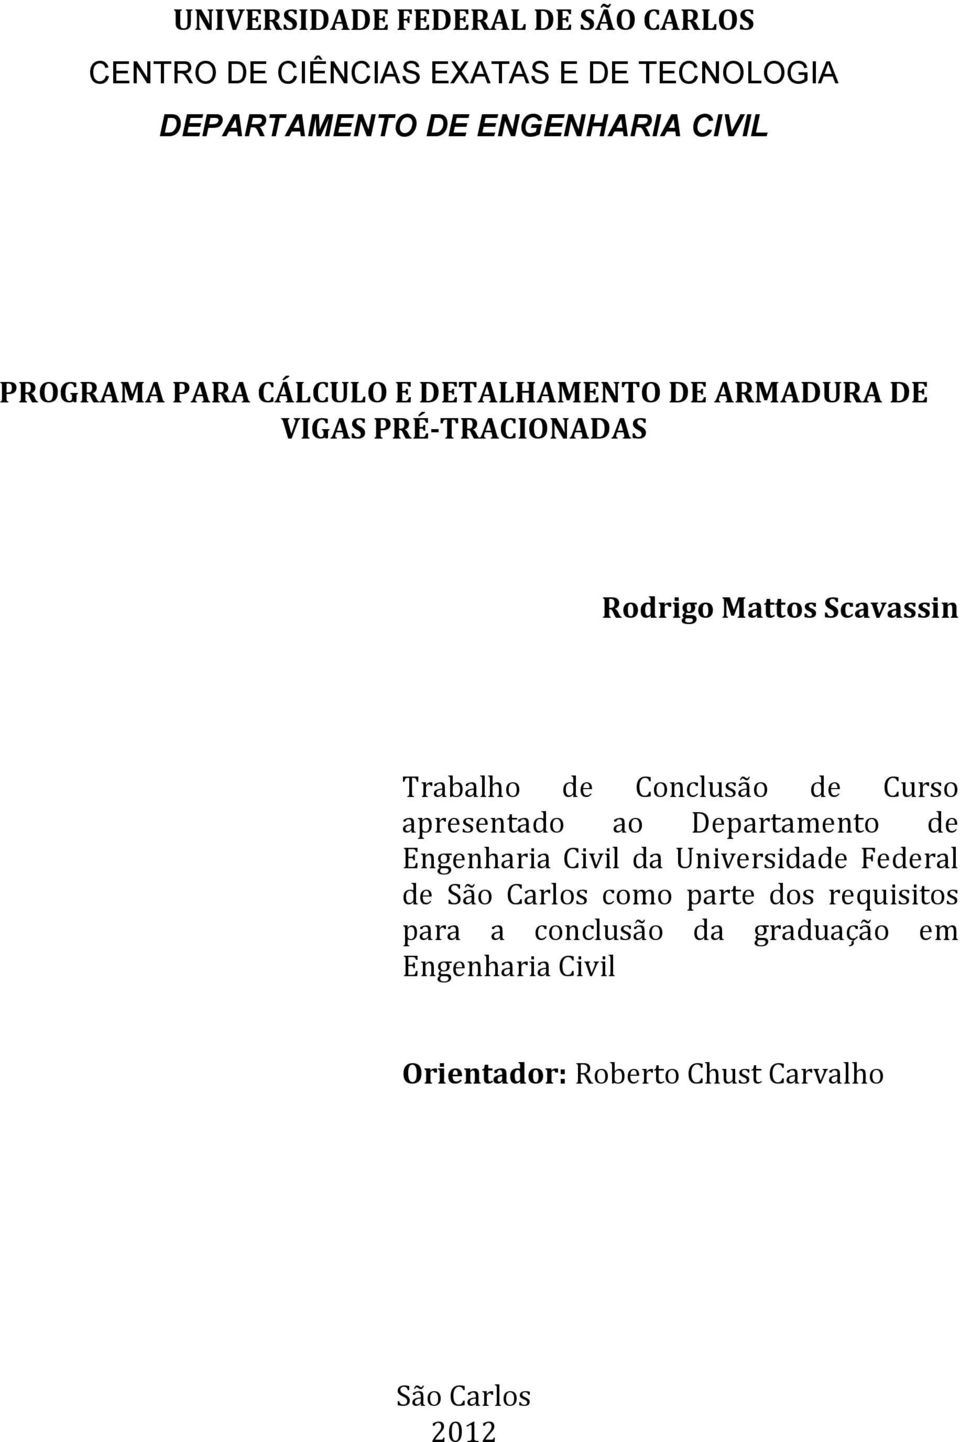 Conclusão de Curso apresentado ao Departamento de Engenharia Civil da Universidade Federal de São Carlos como